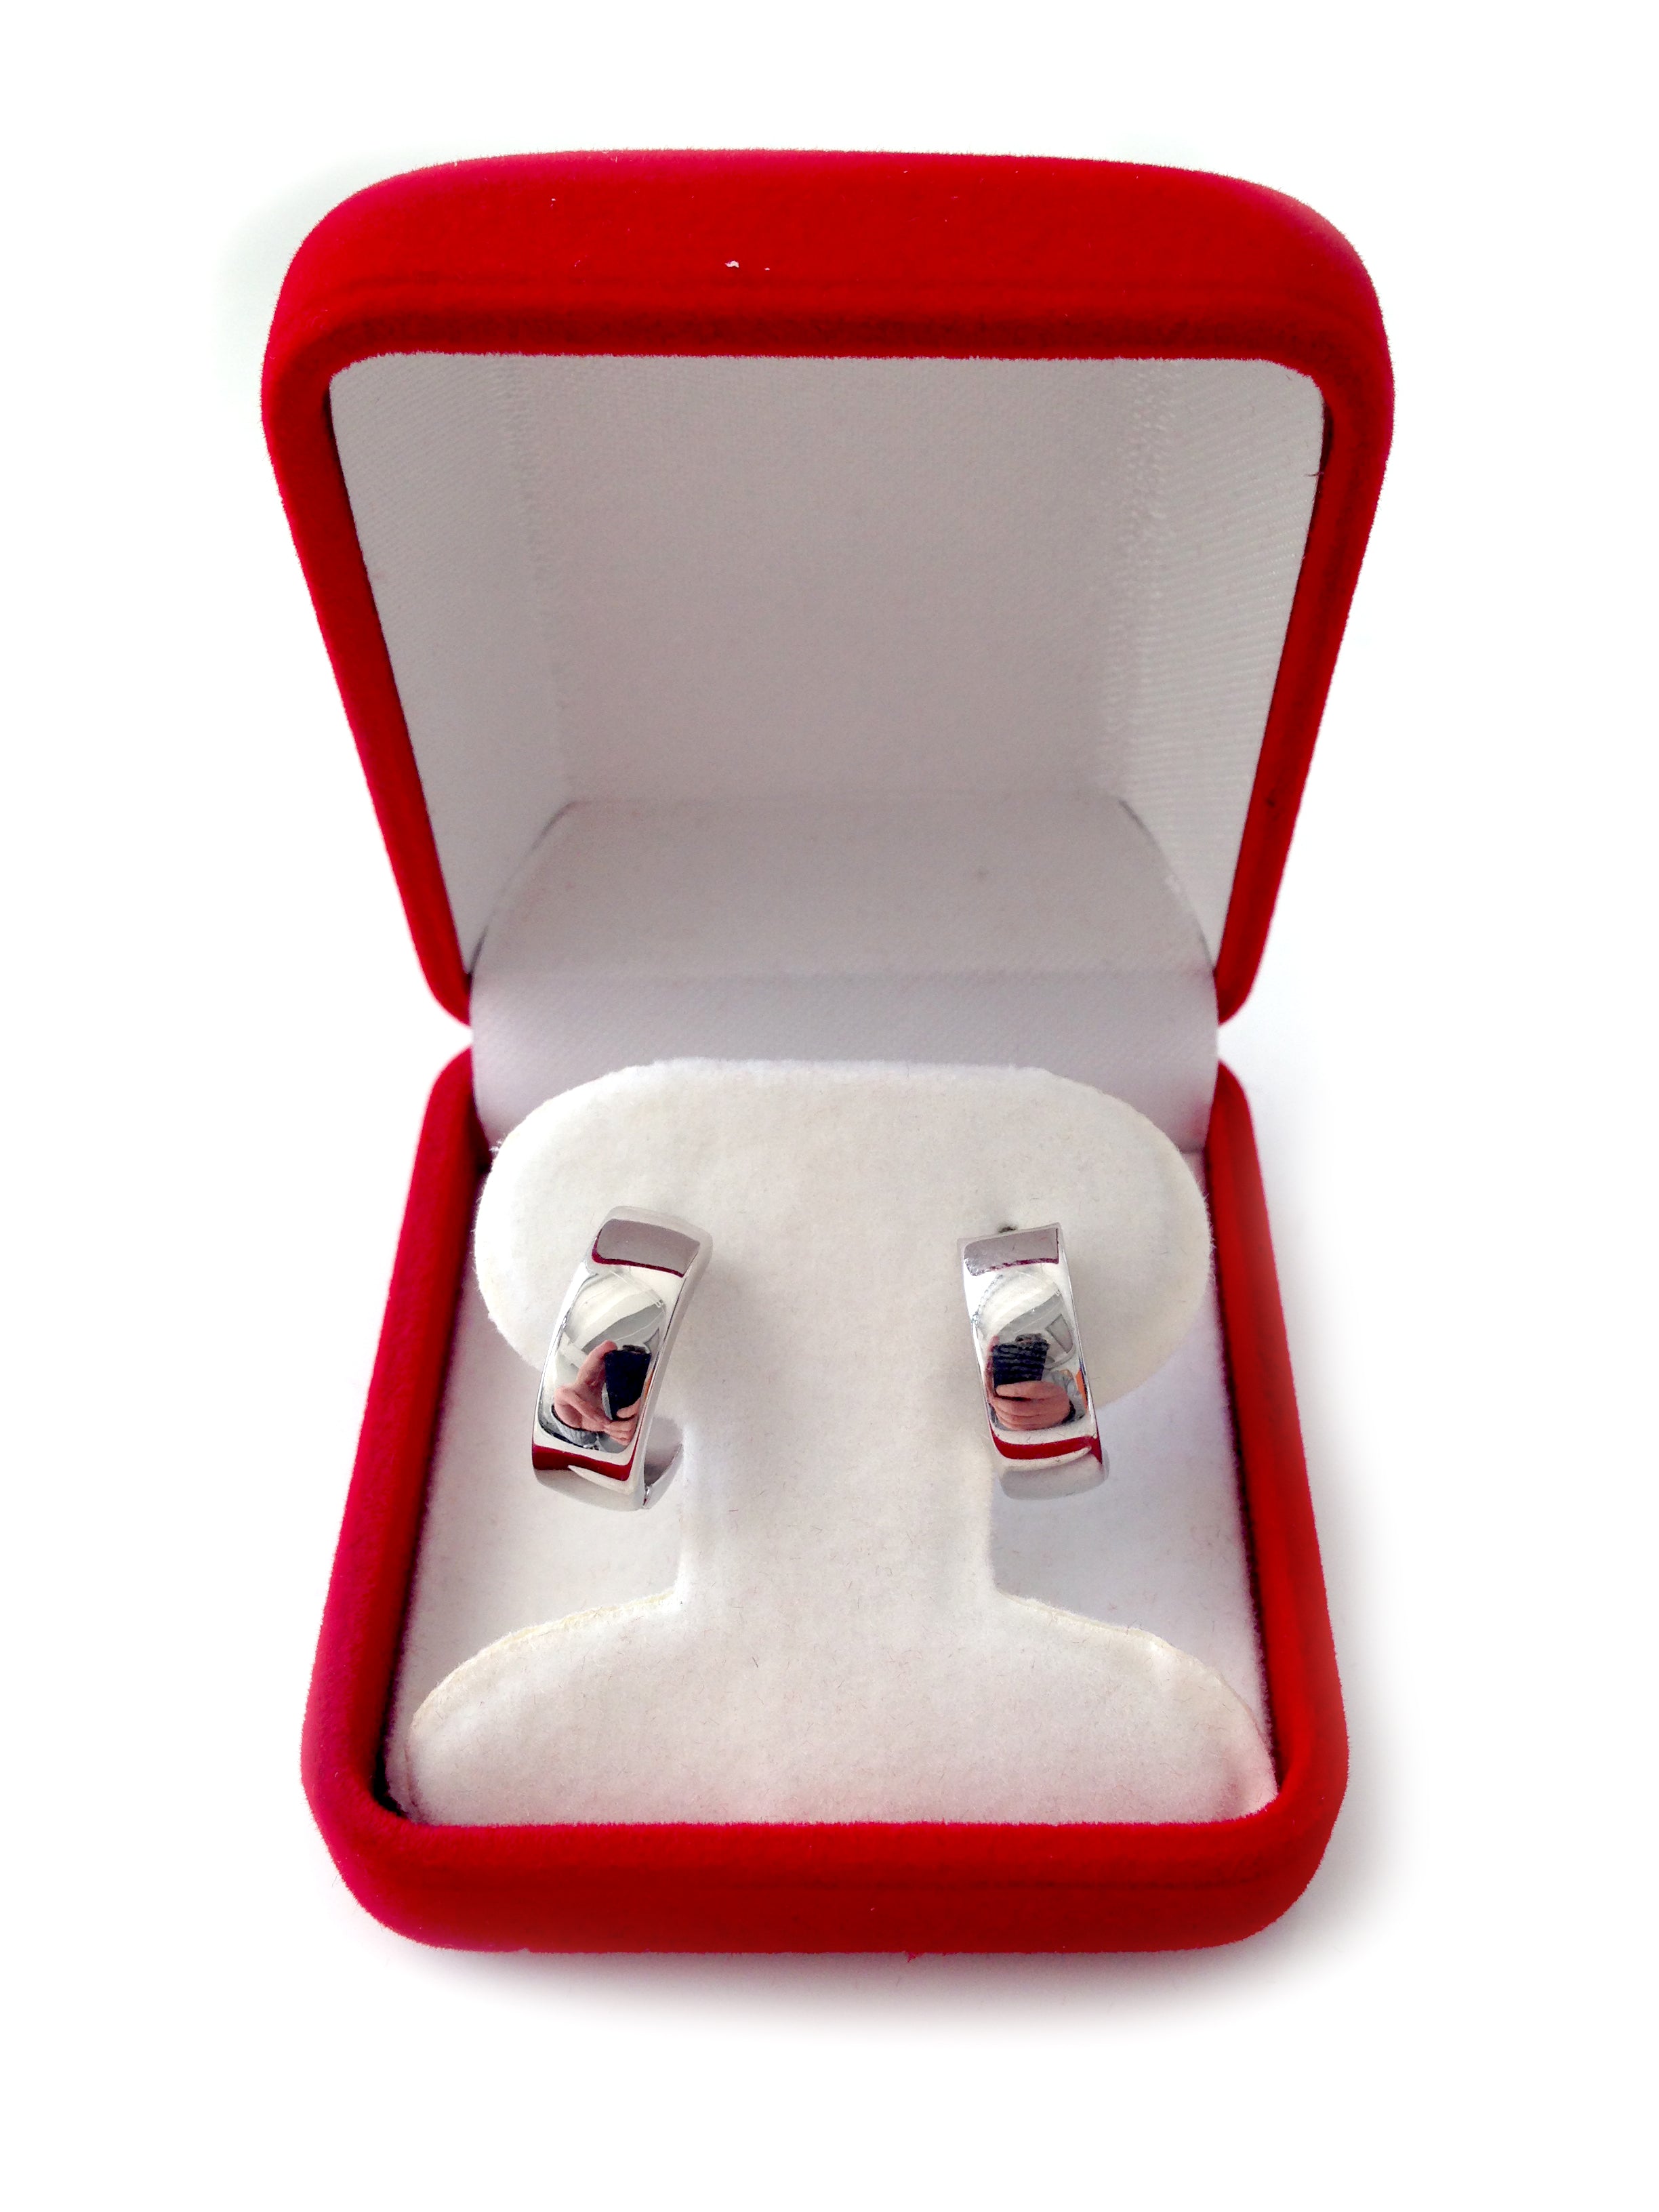 14k White Gold Snuggable Huggie Earrings, Diameter 15mm